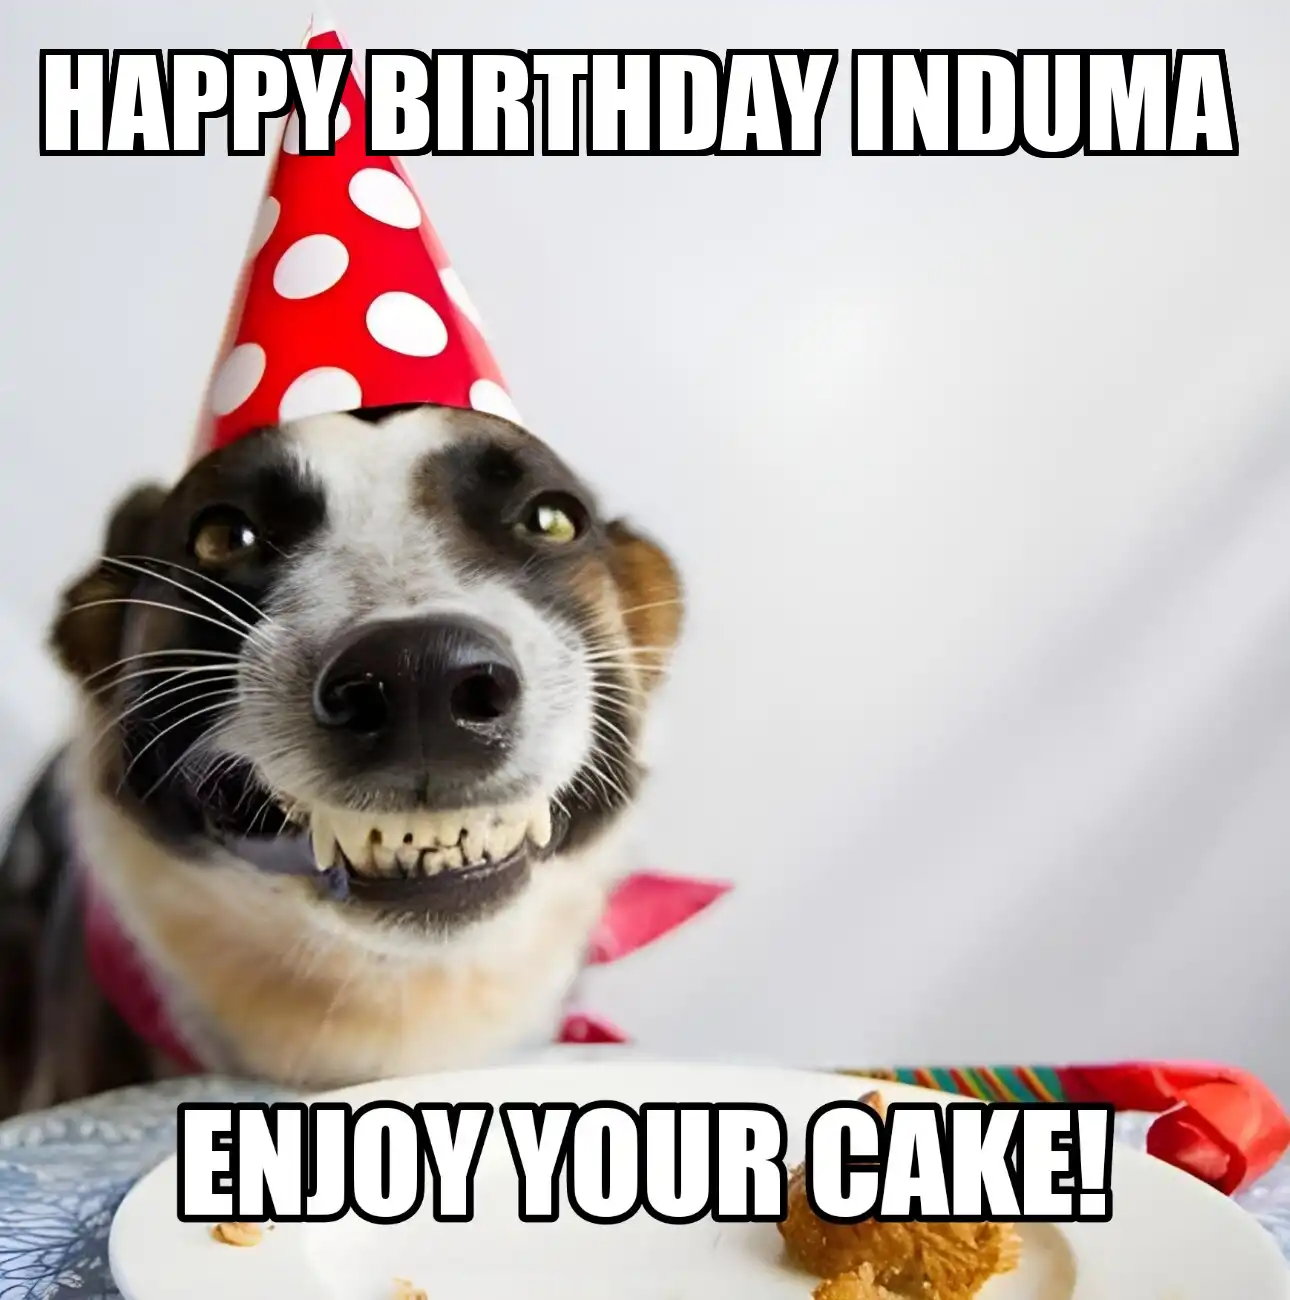 Happy Birthday Induma Enjoy Your Cake Dog Meme